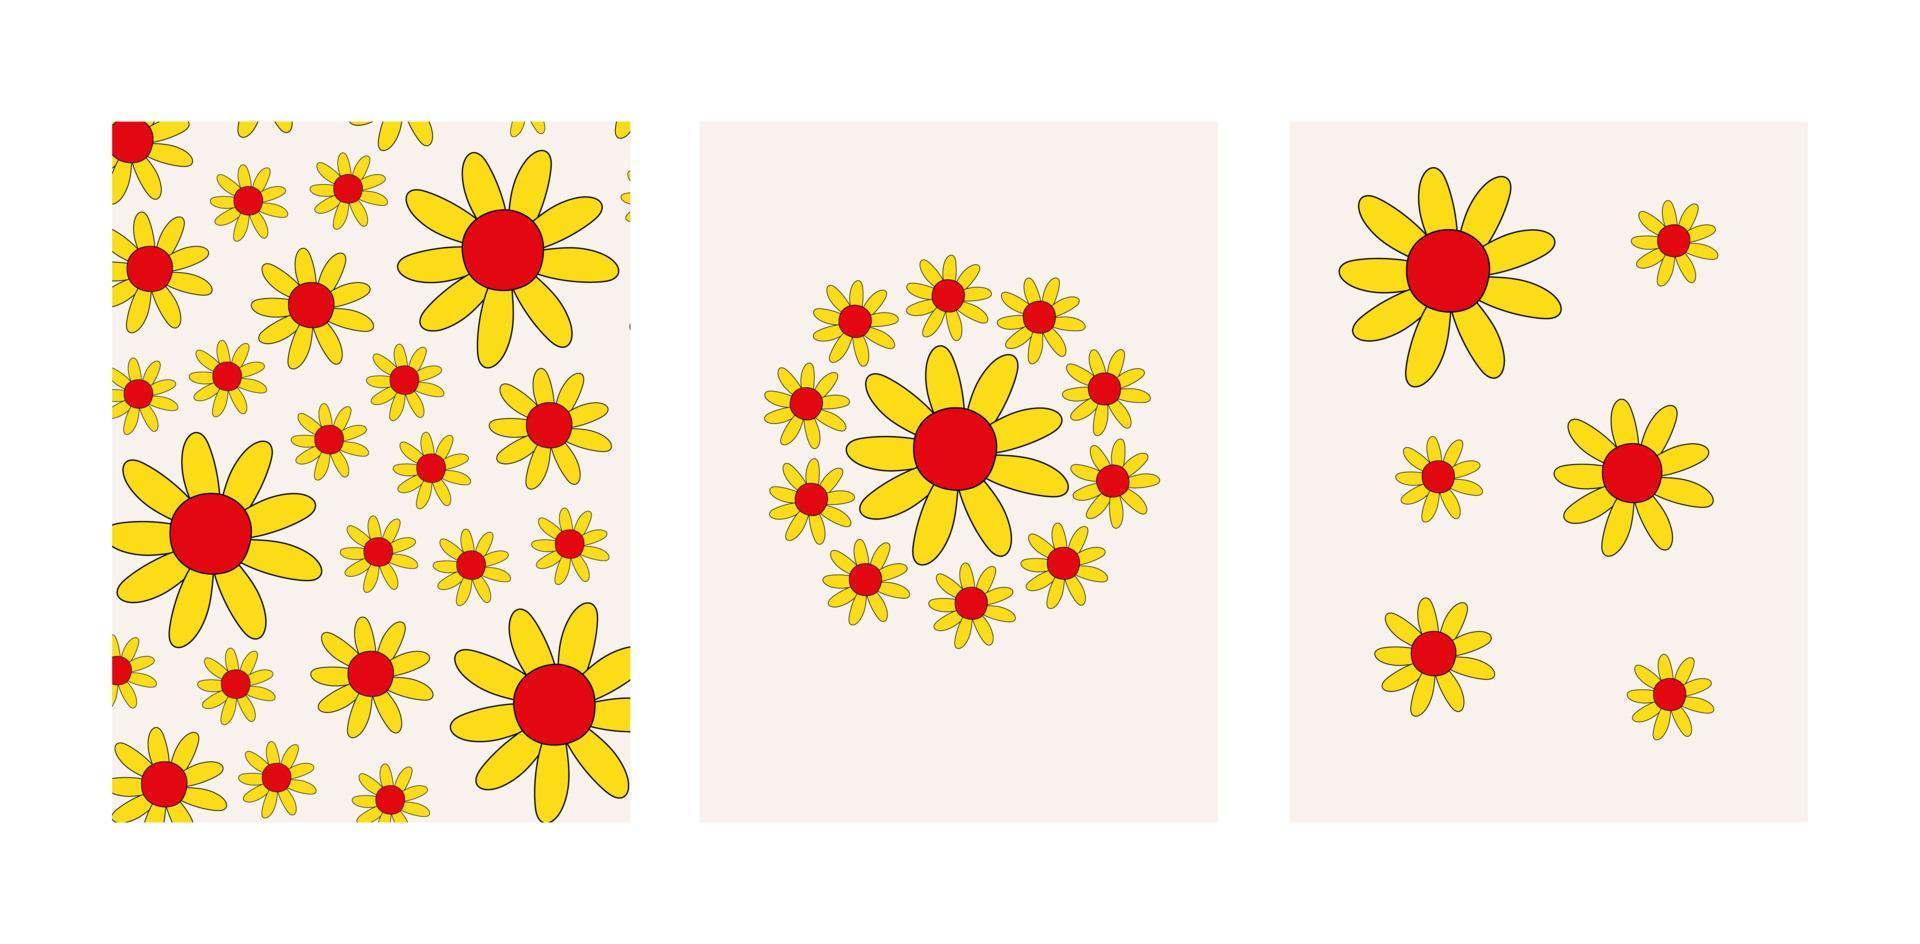 cartazes vintage retrô em estilo hippie dos anos 60, 70. padrões groovy com formas de flores. ilustração vetorial colorida vetor